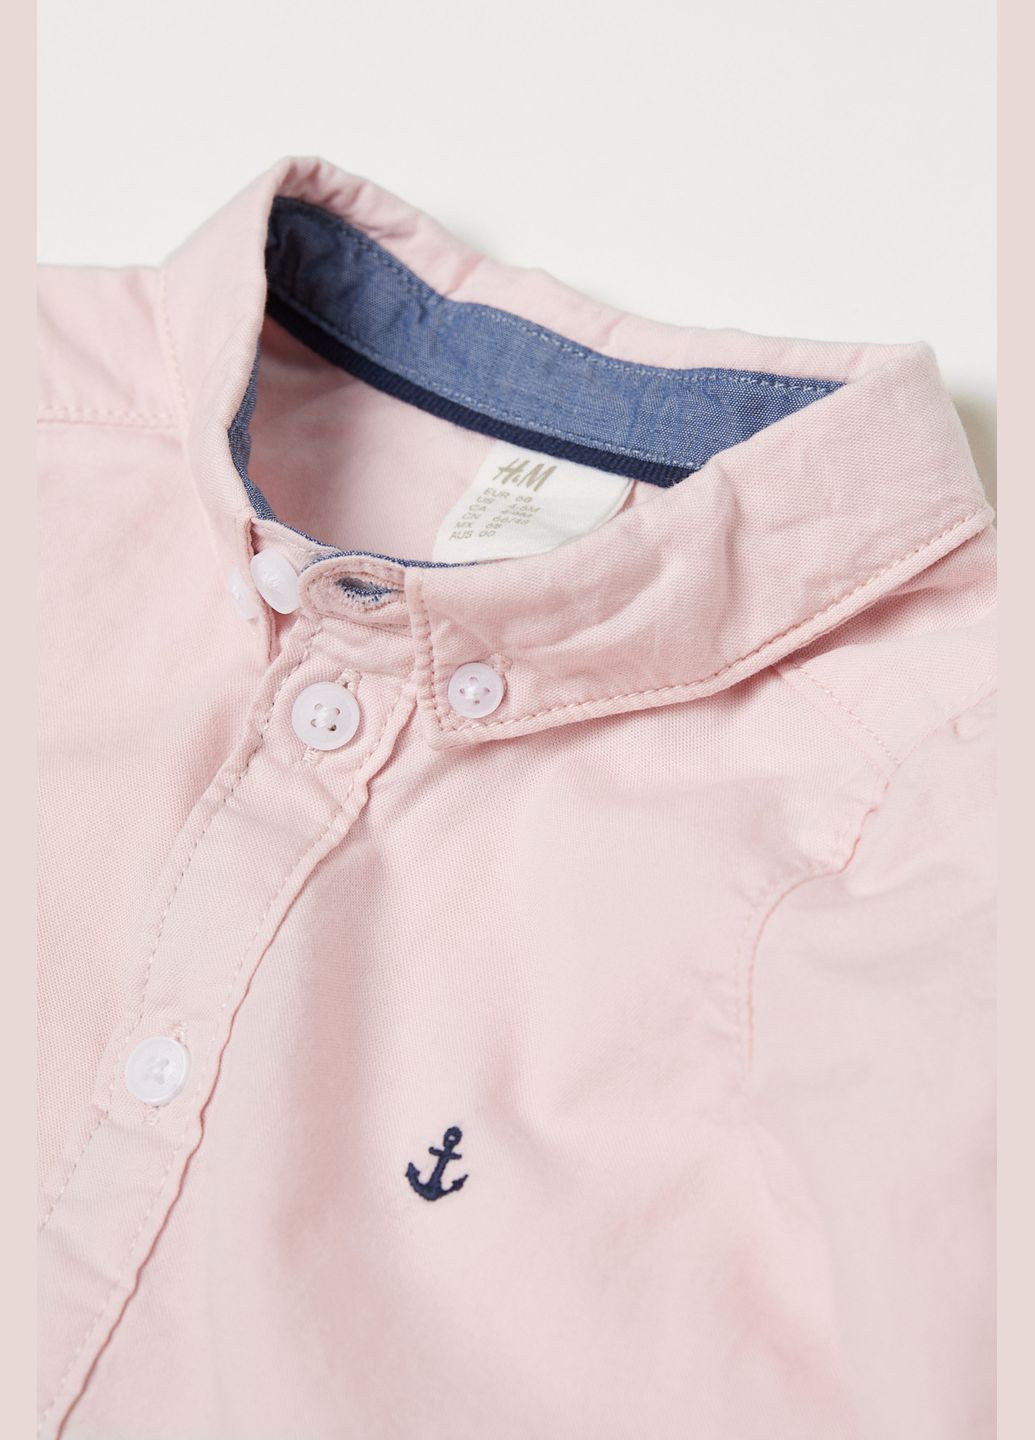 Светло-розовая рубашка H&M